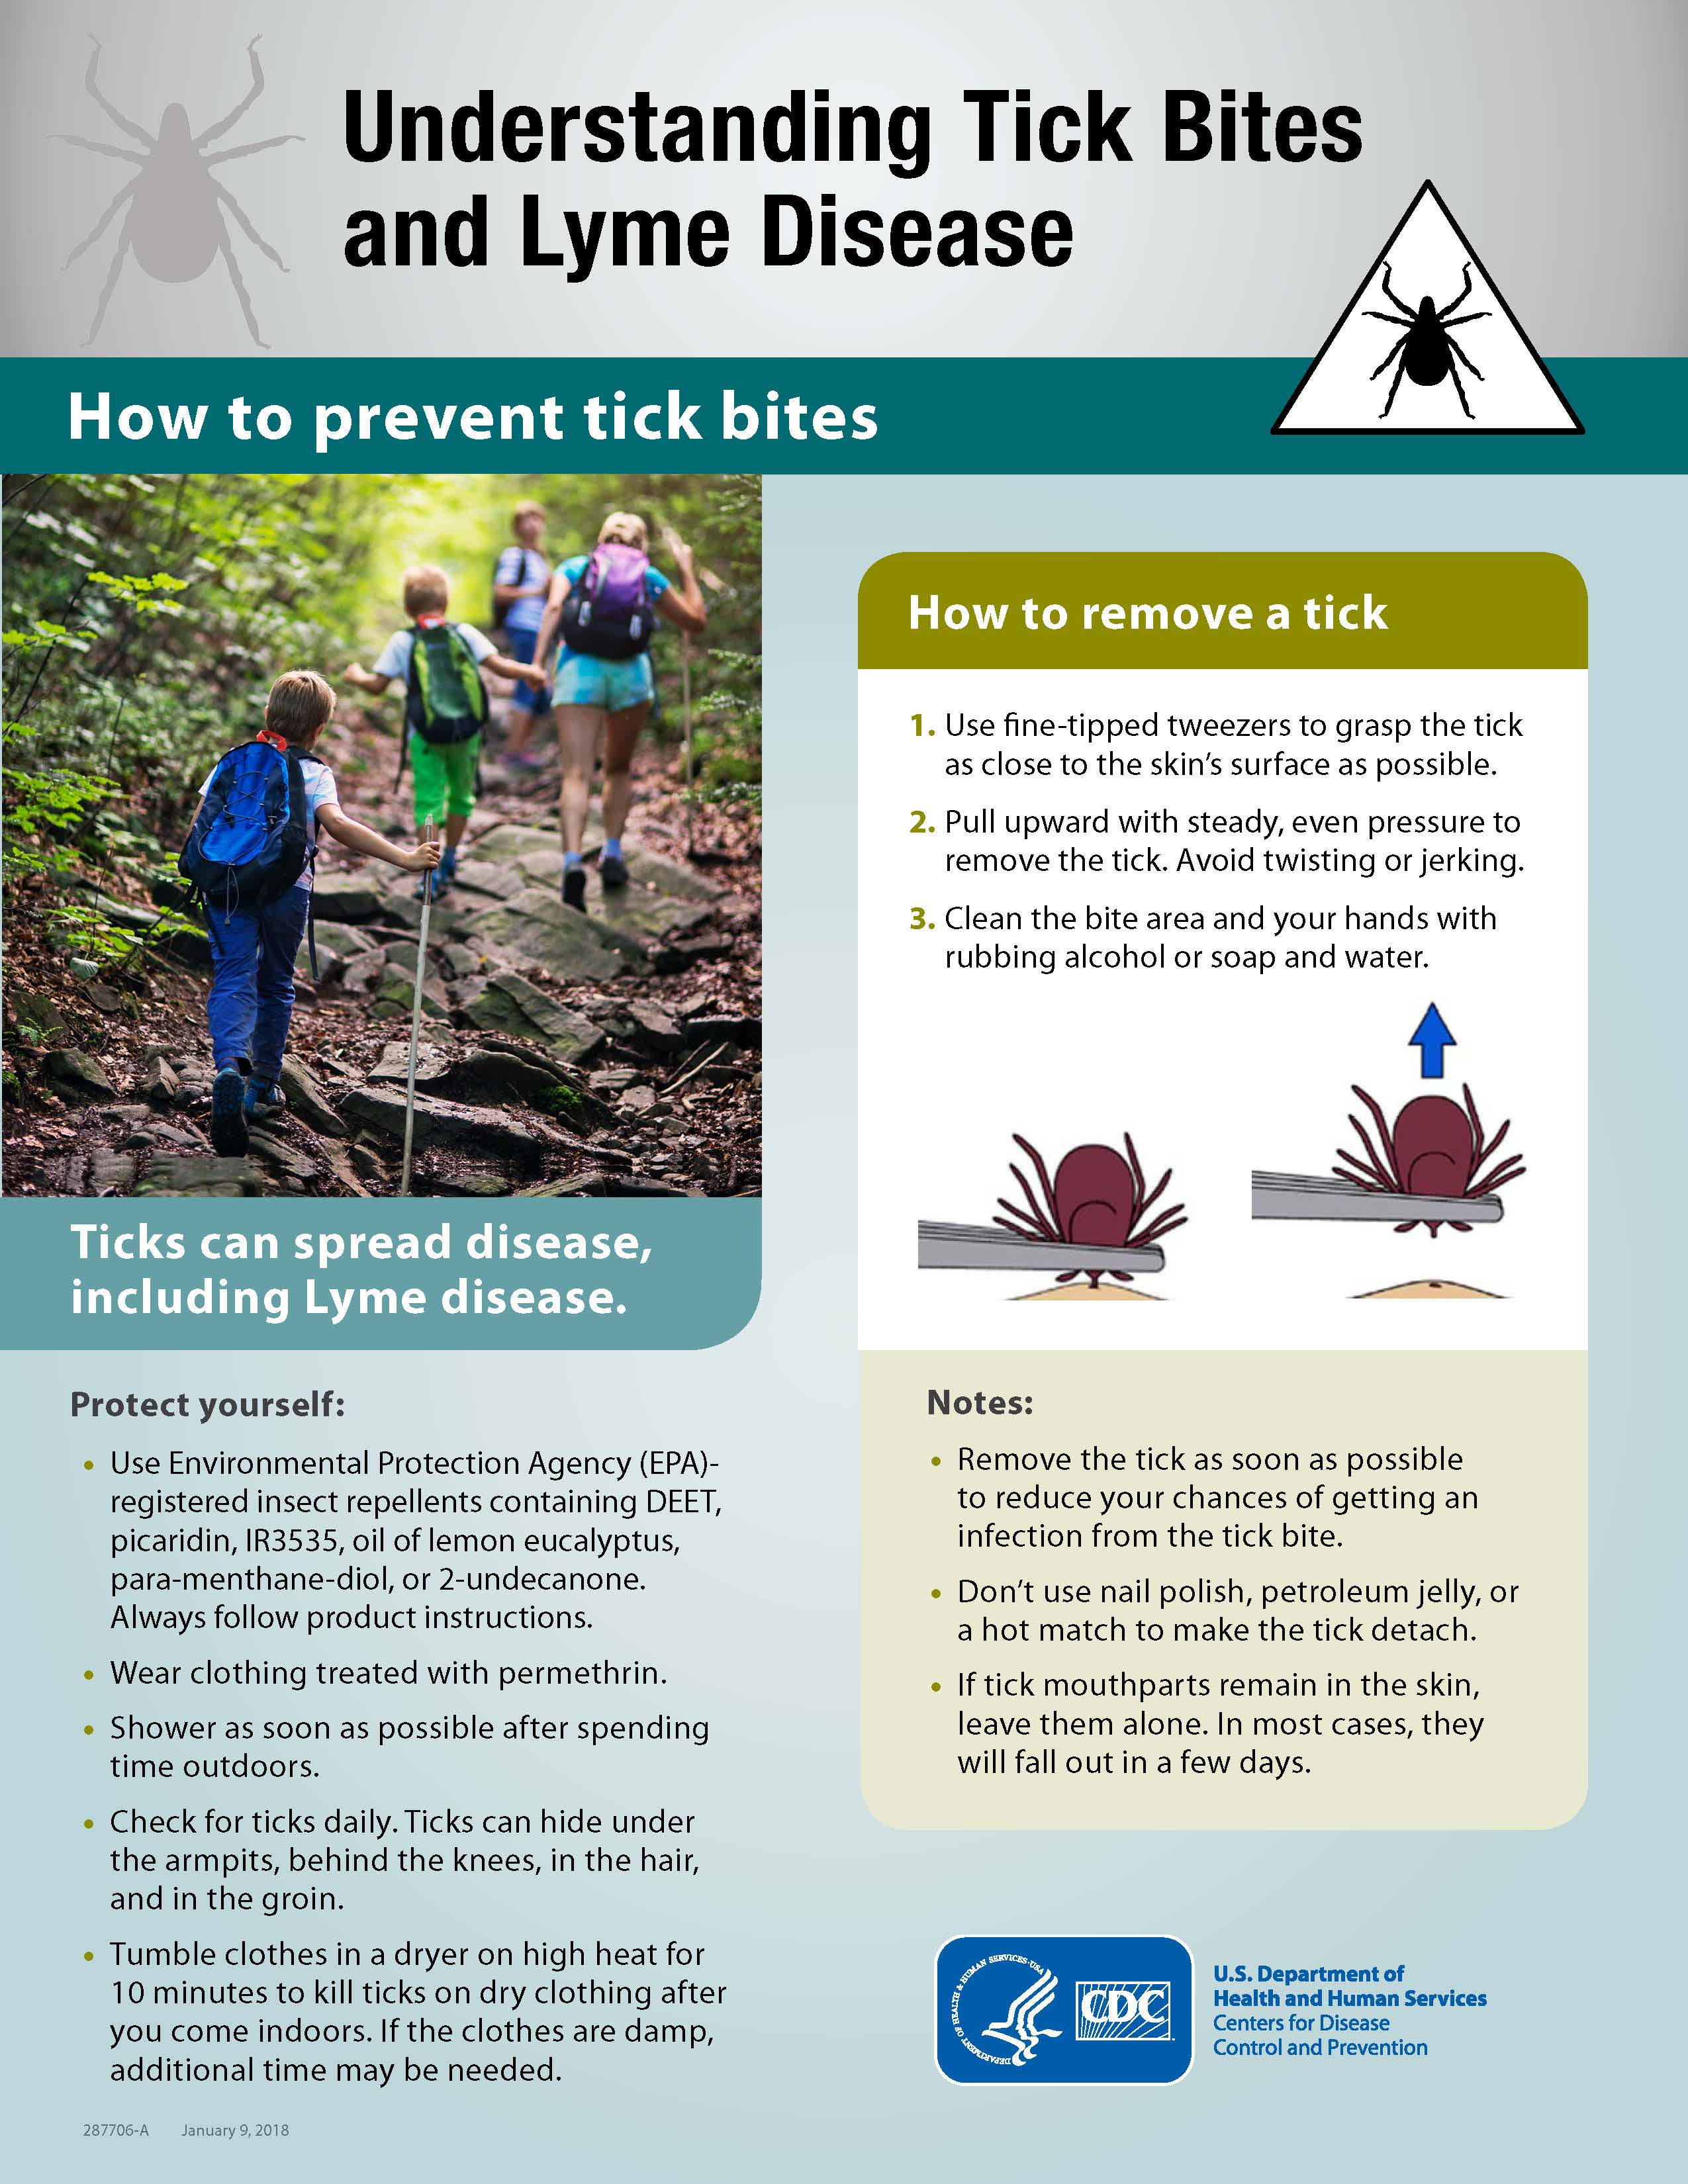 How to Prevent Tick Bites